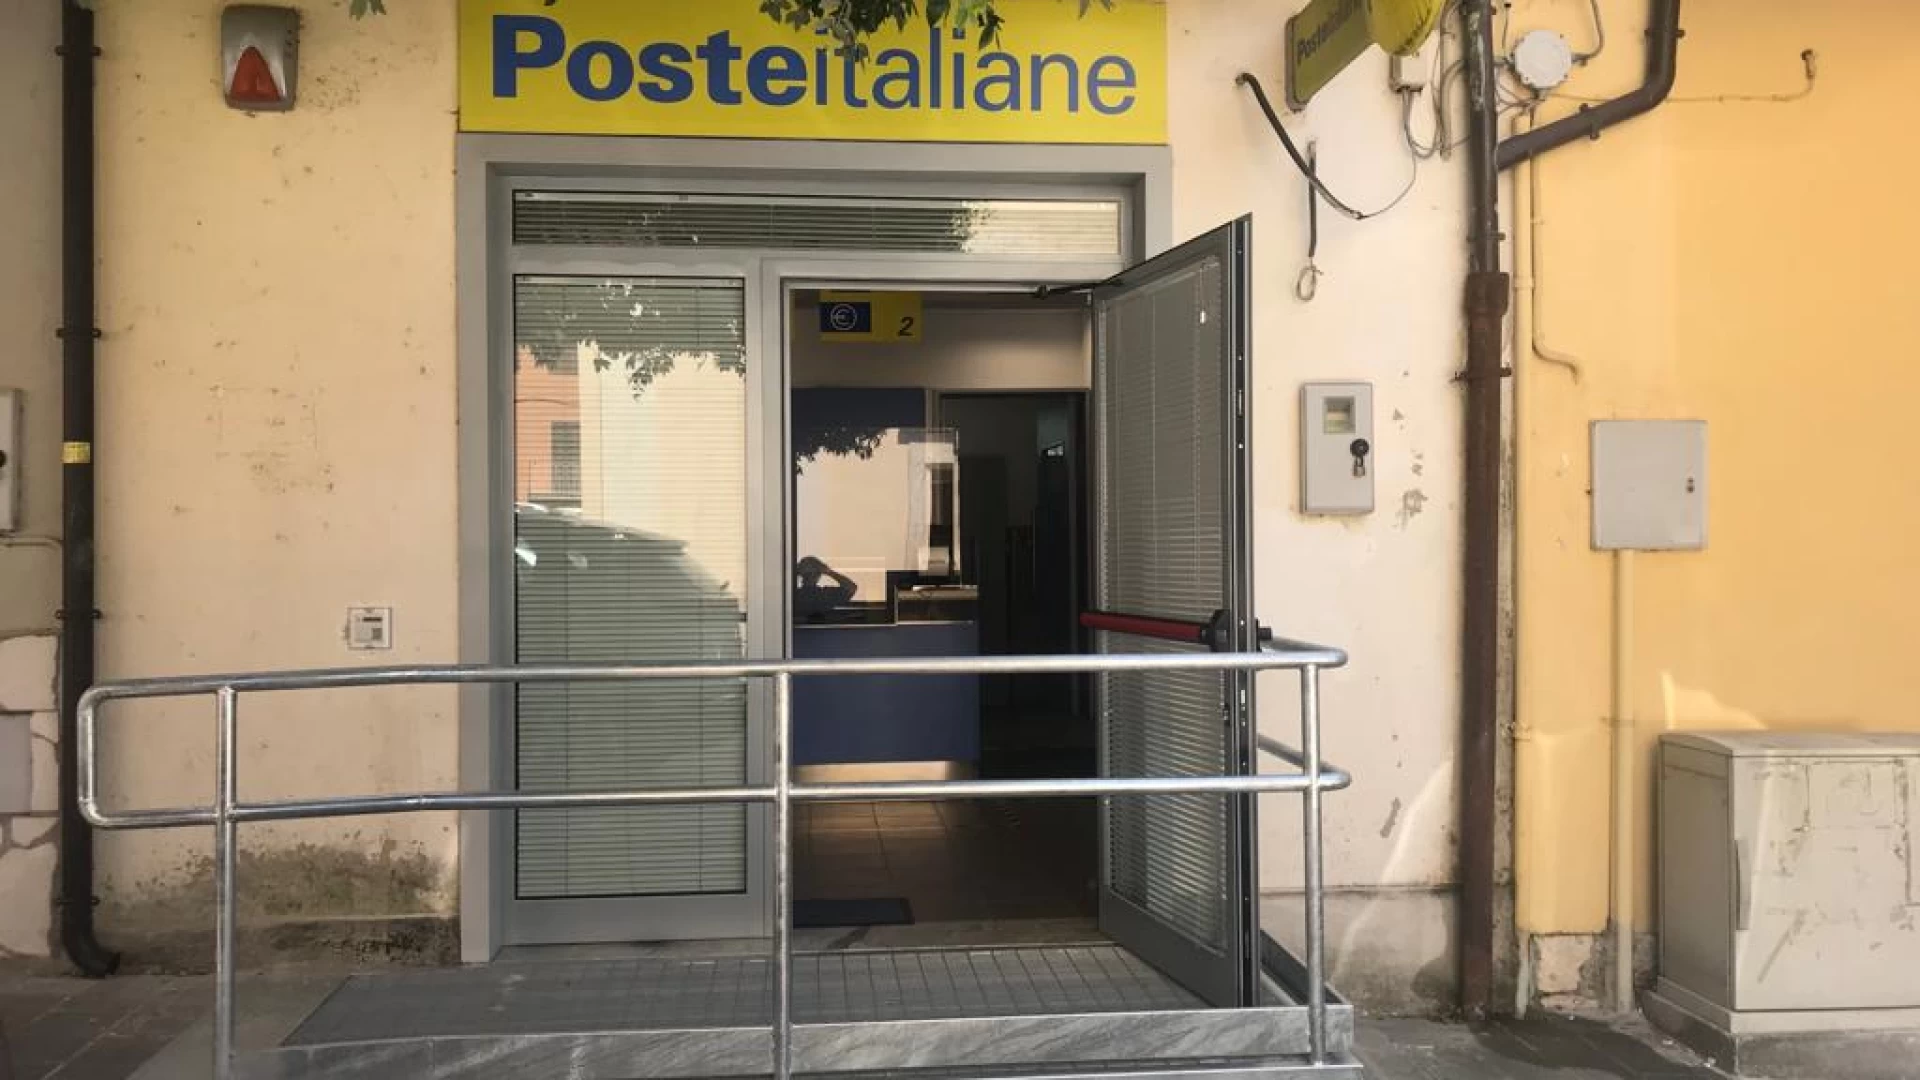 Poste Italiane: ad Isernia uffici aperti anche nella settimana di ferragosto con orario continuato fino alle 19.05